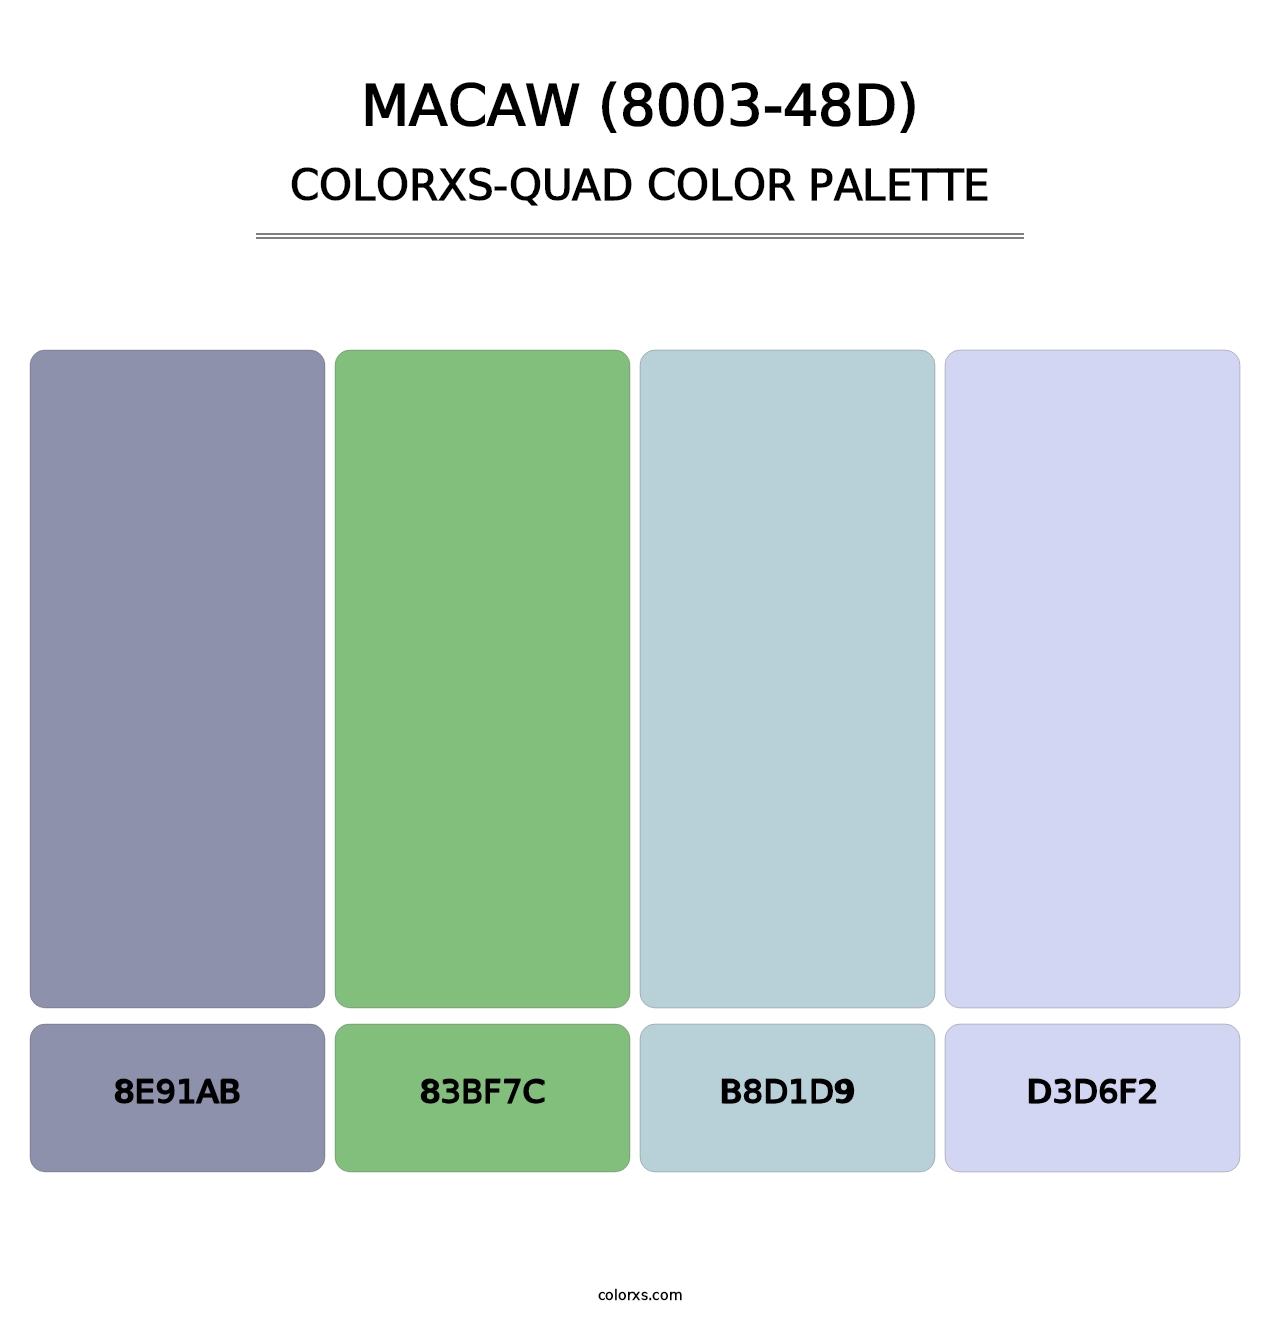 Macaw (8003-48D) - Colorxs Quad Palette